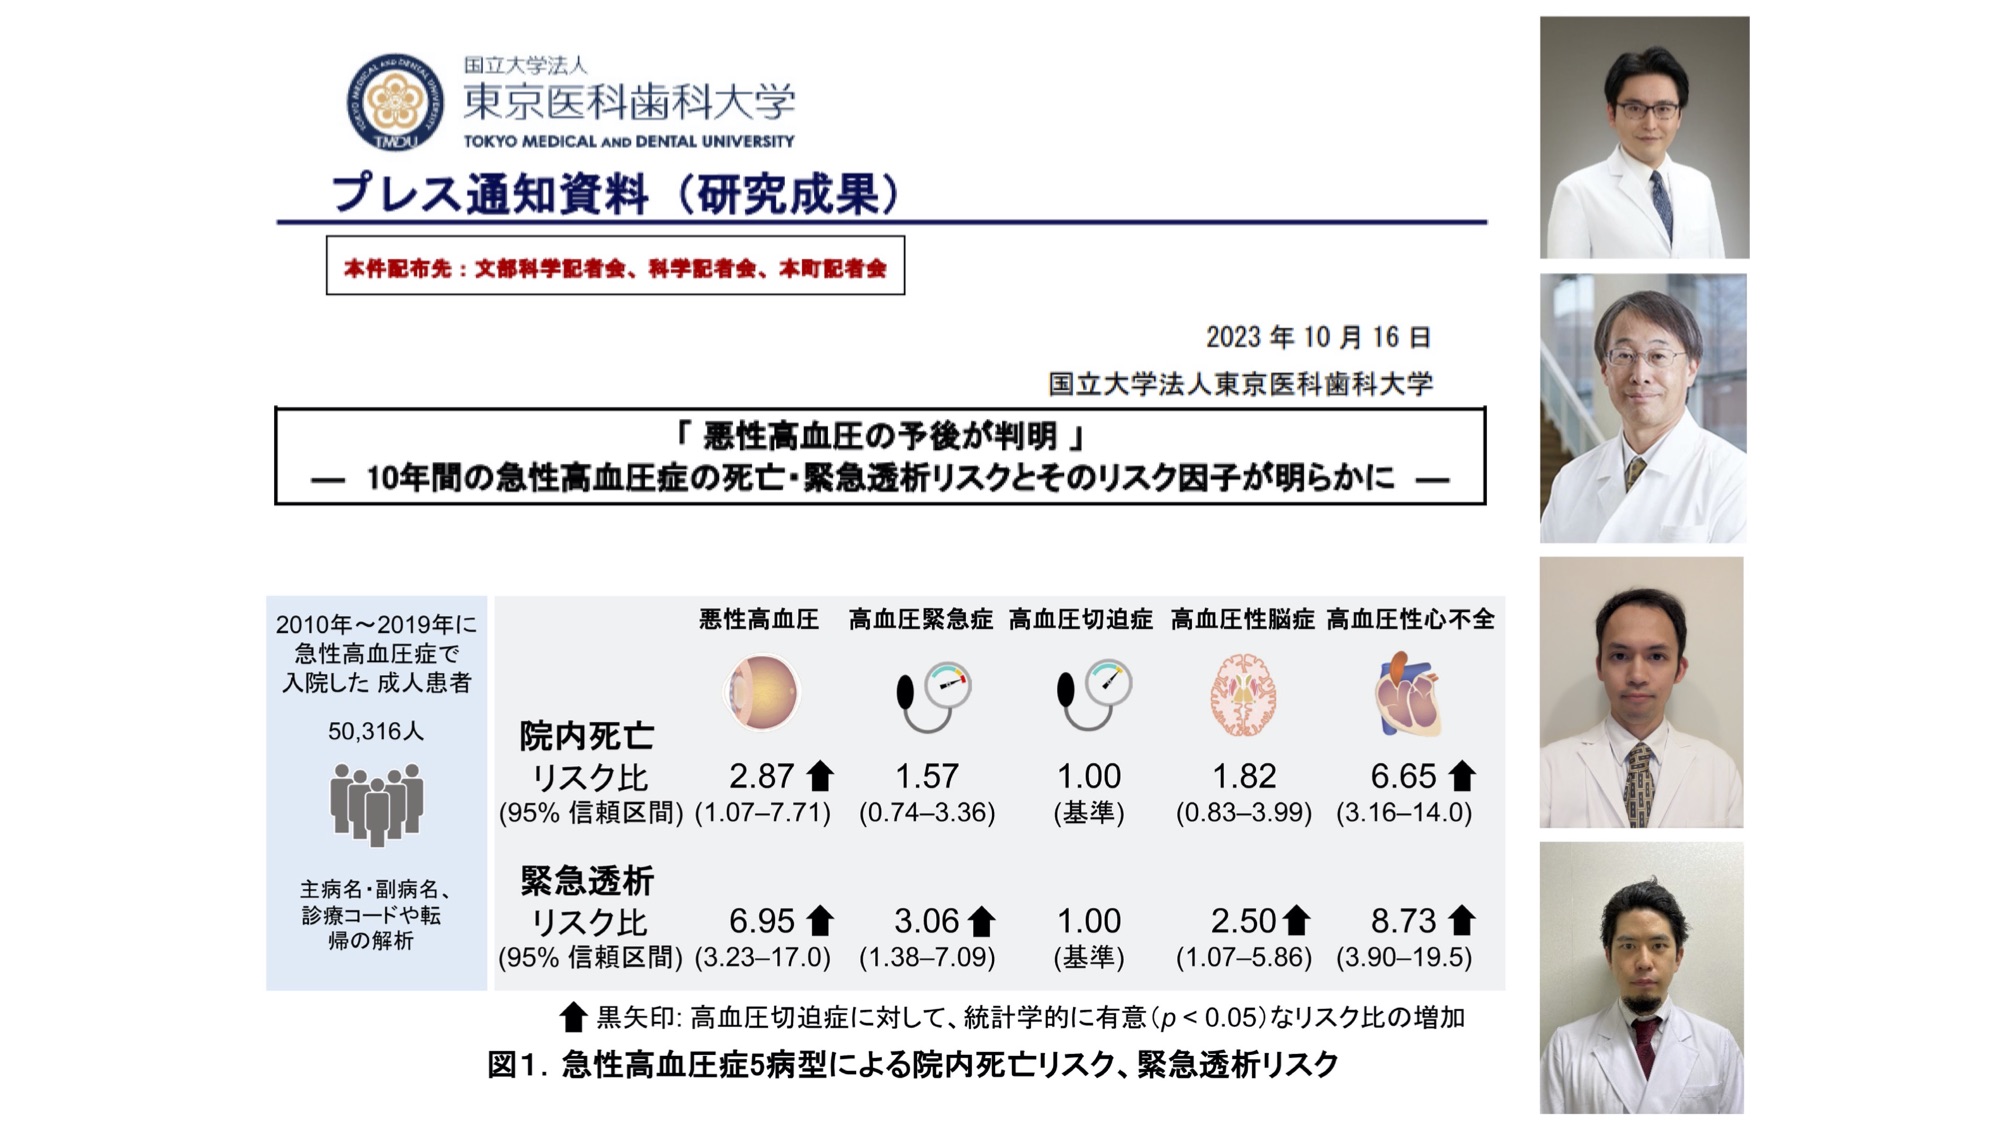 萬代新太郎助教、松木久住先生、源馬拓先生の論文がHypertension誌に受理され、プレスリリースを行いました